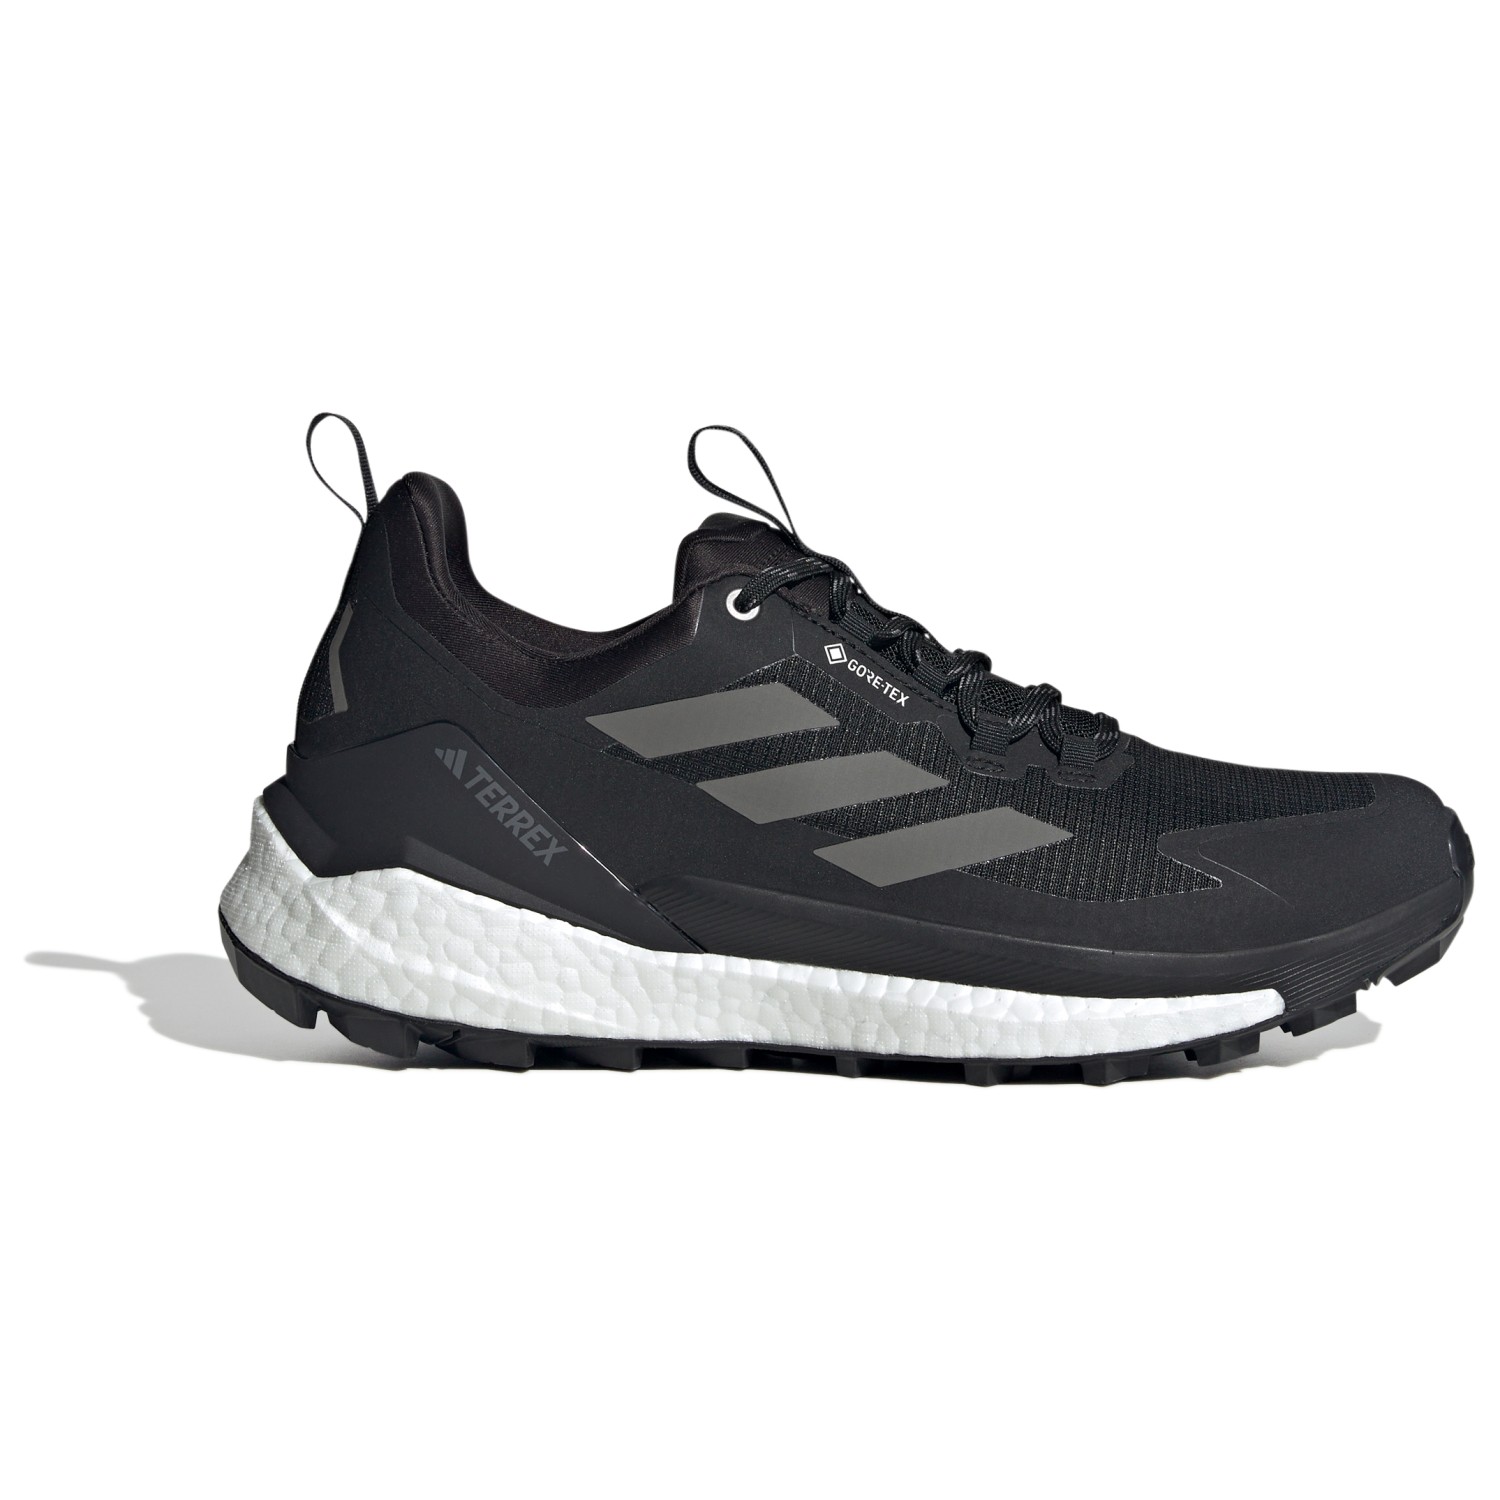 Мультиспортивная обувь Adidas Terrex Terrex Free Hiker 2 Low GTX, цвет Core Black/Grey Four/FTW White беговая обувь adidas adizero adios 8 цвет carbon ftw white core black